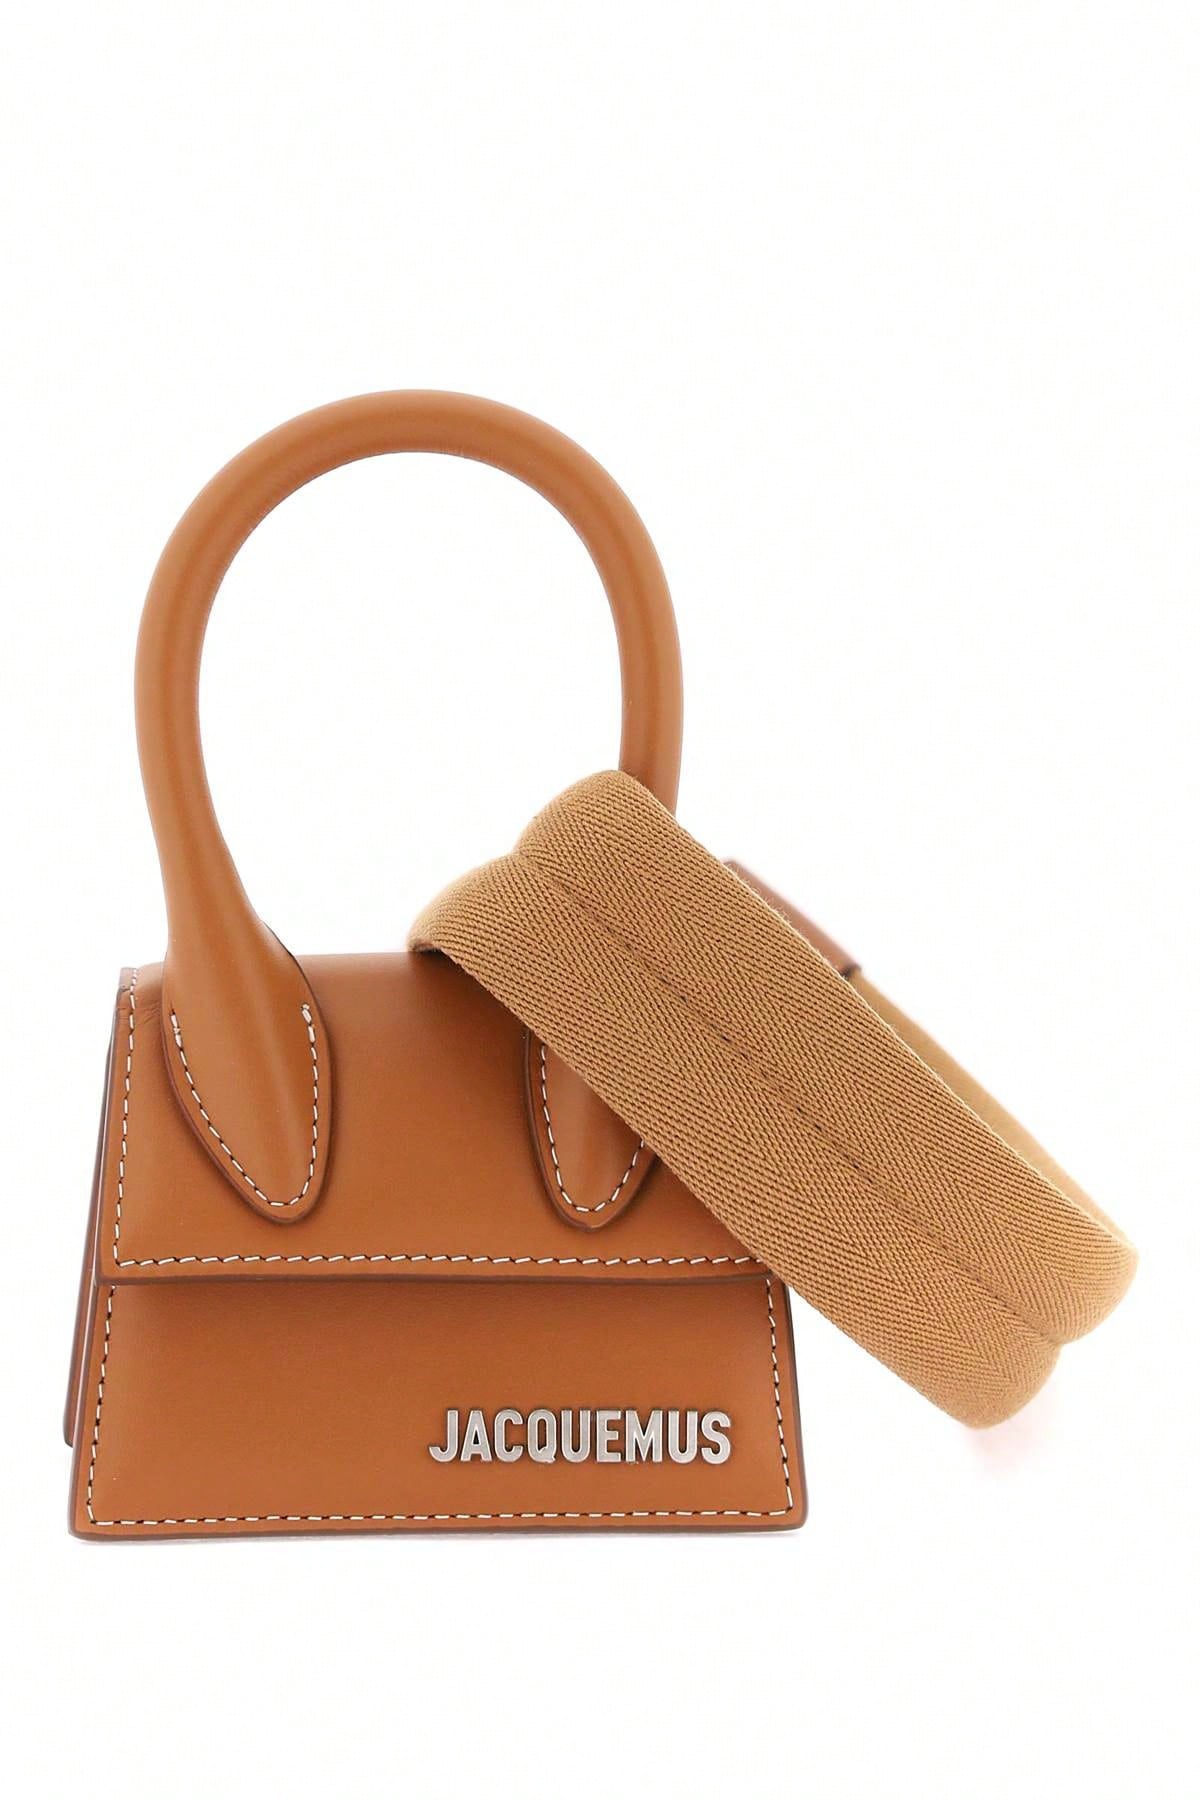 Jacquemus Мини-сумка Jacquemus 'Le Chiquito', черный jacquemus мини сумка jacquemus le chiquito черный